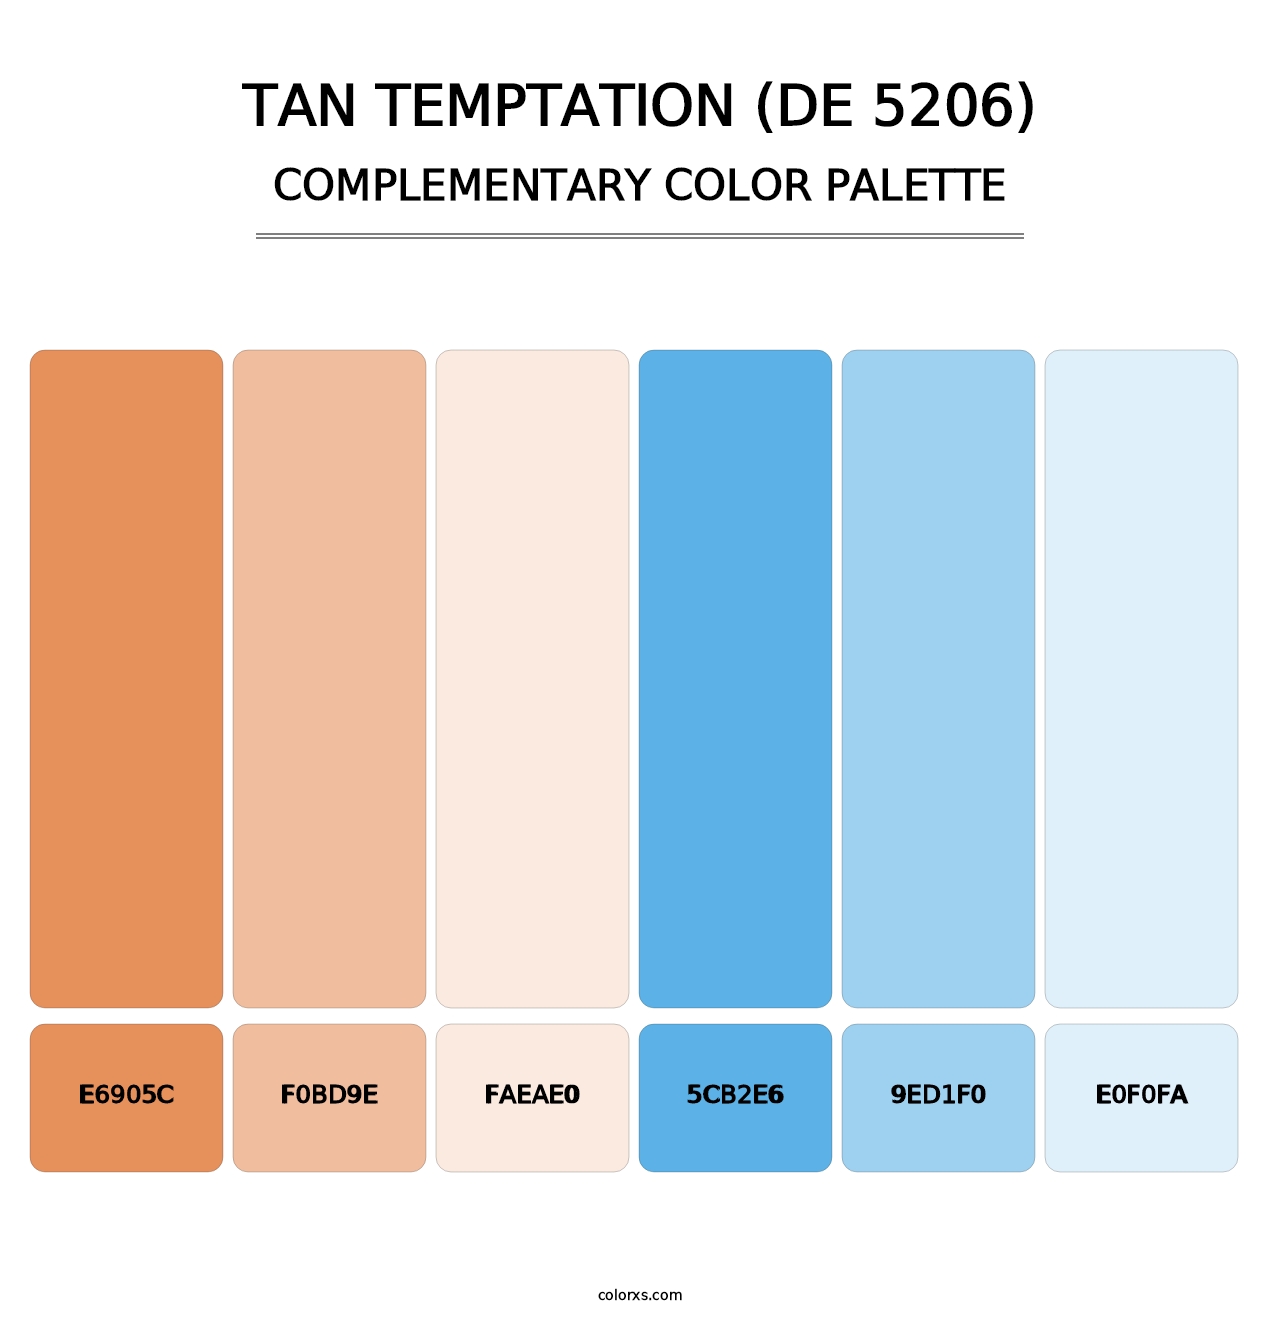 Tan Temptation (DE 5206) - Complementary Color Palette